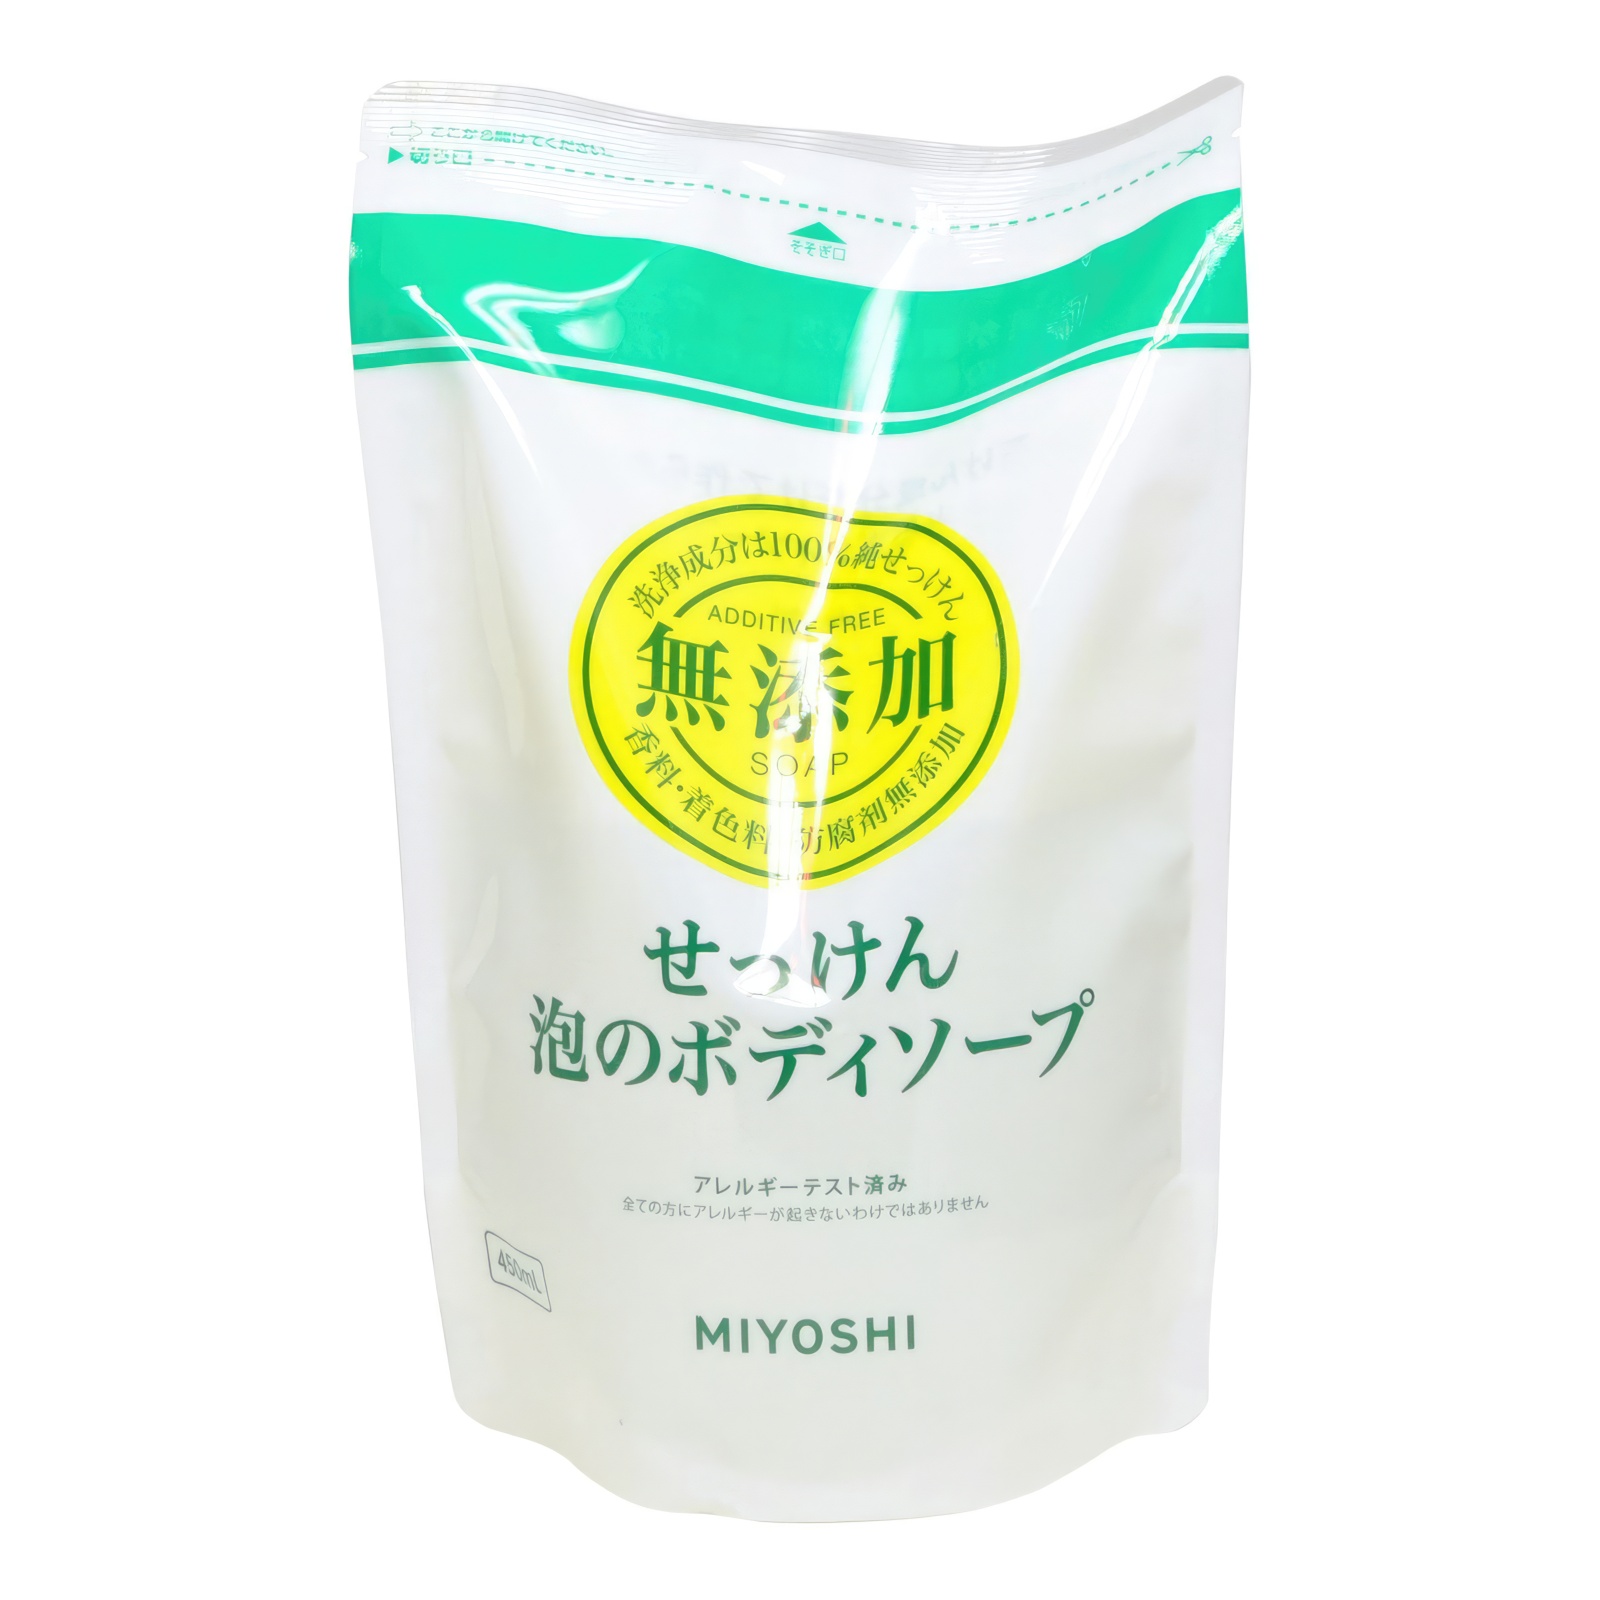 Натуральное пенящееся жидкое мыло MIYOSHI эко 450 мл з б myloff vsb твёрдая мыльная основа 1 кг